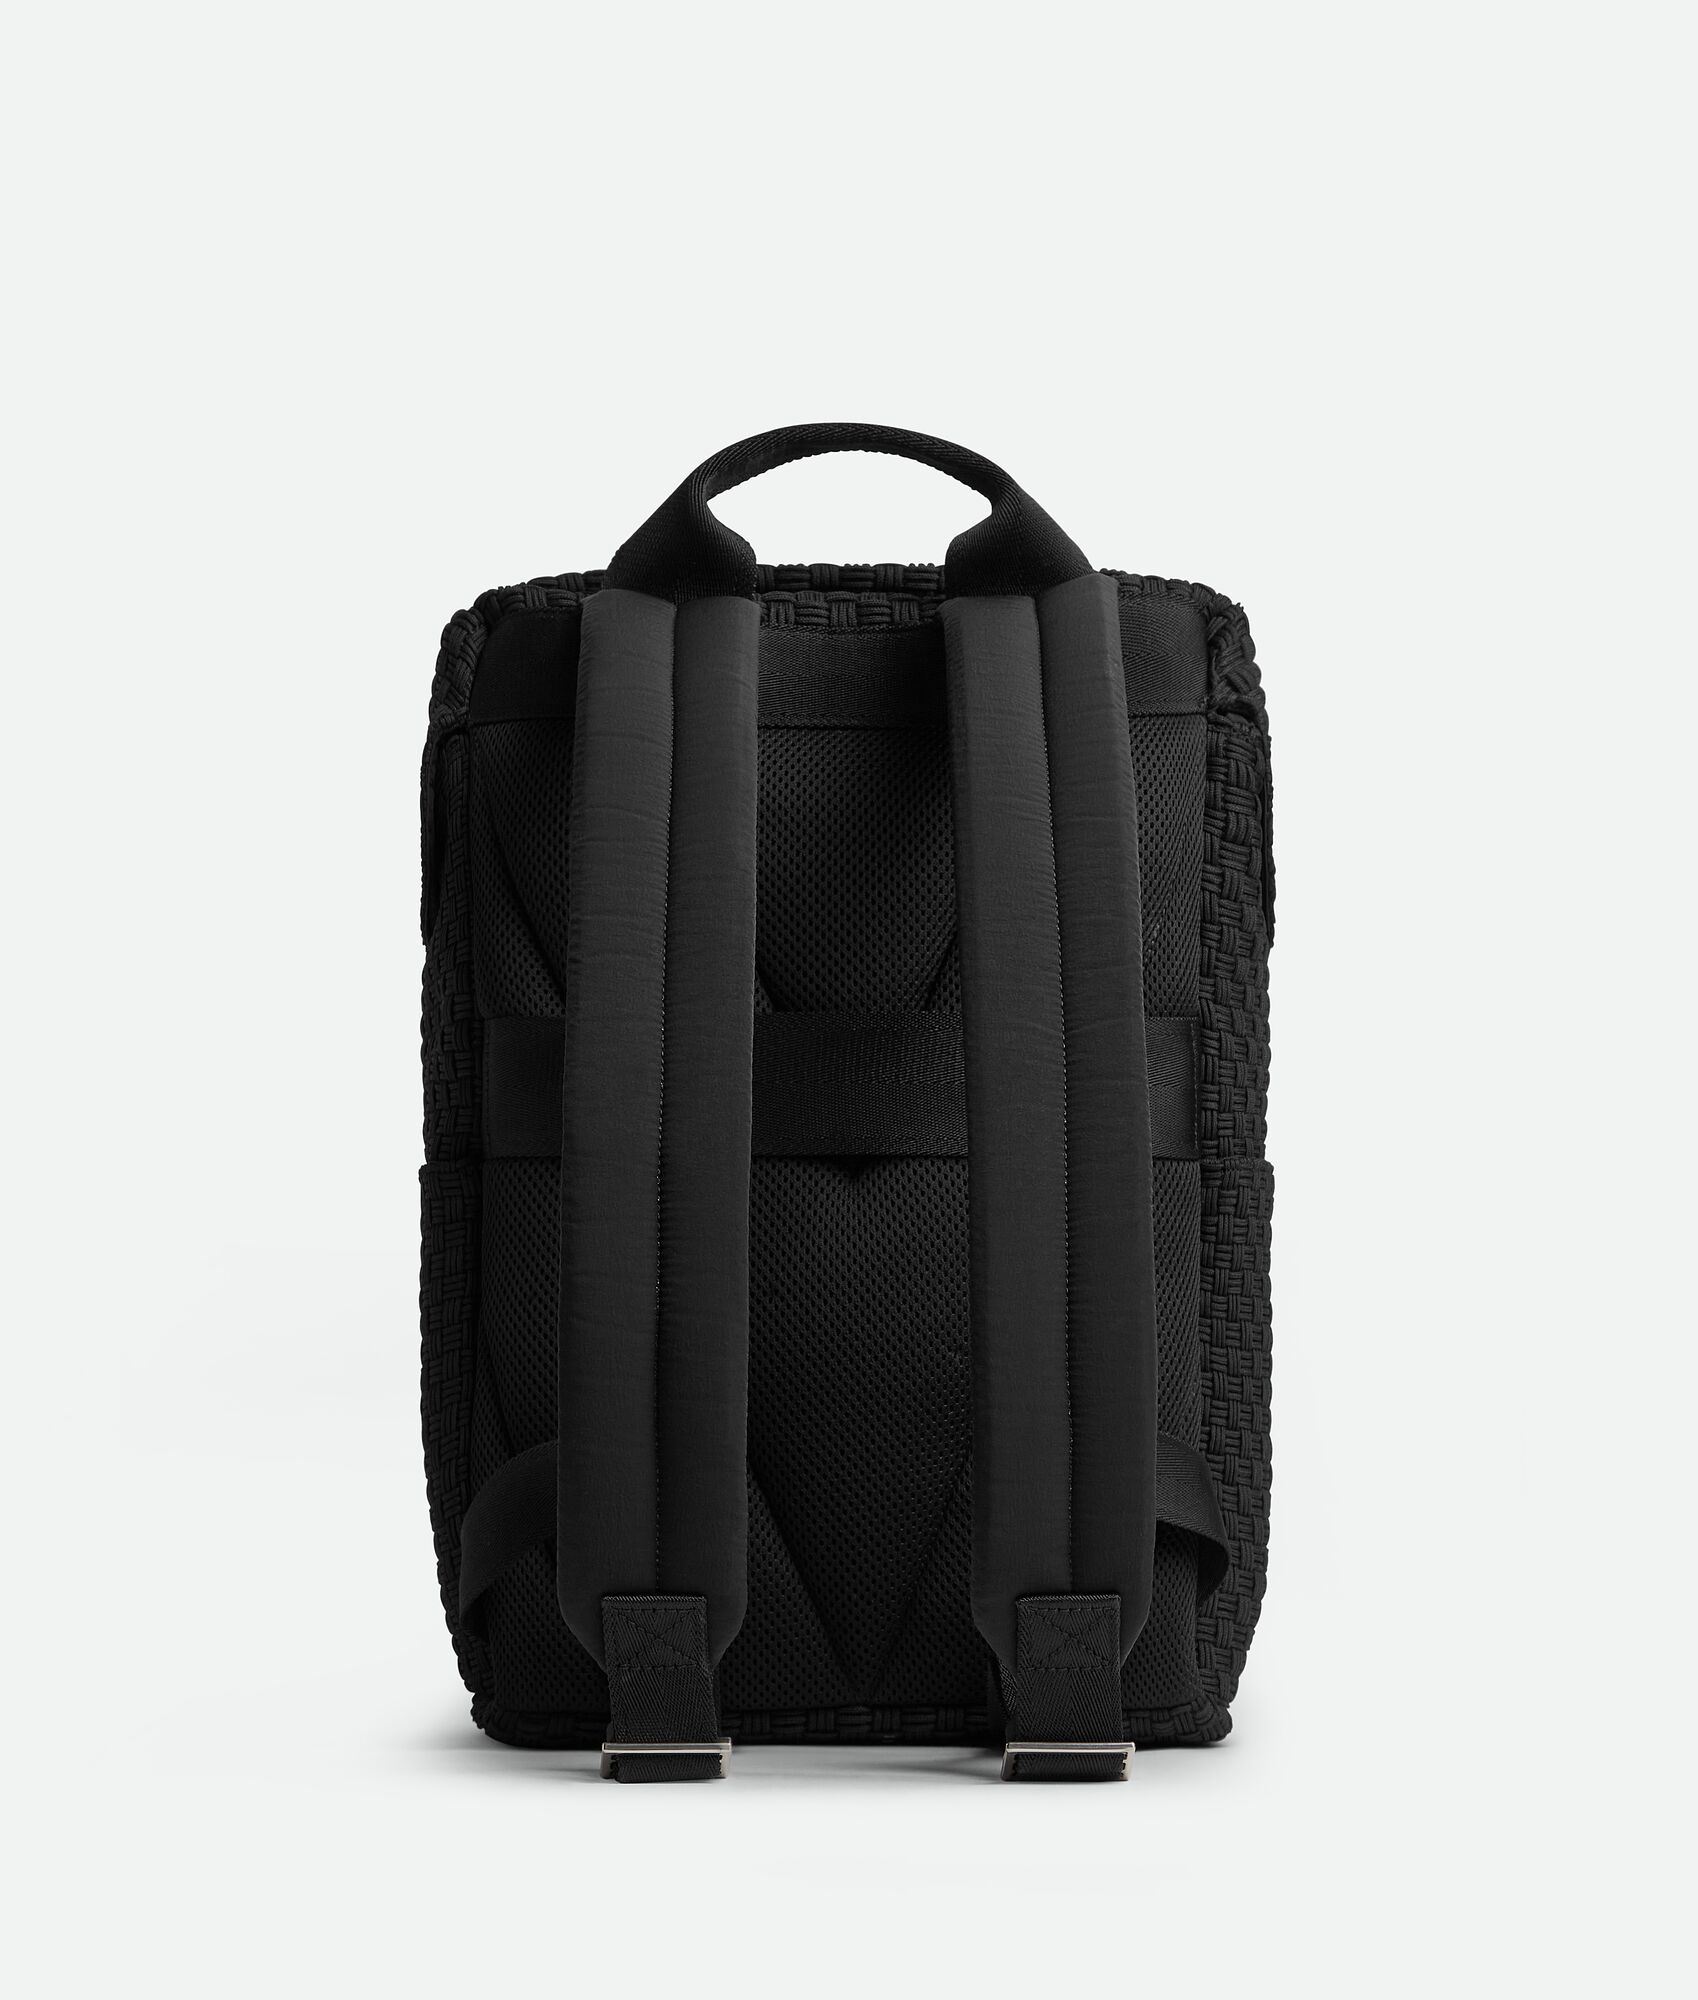 Voyager Backpack - 4